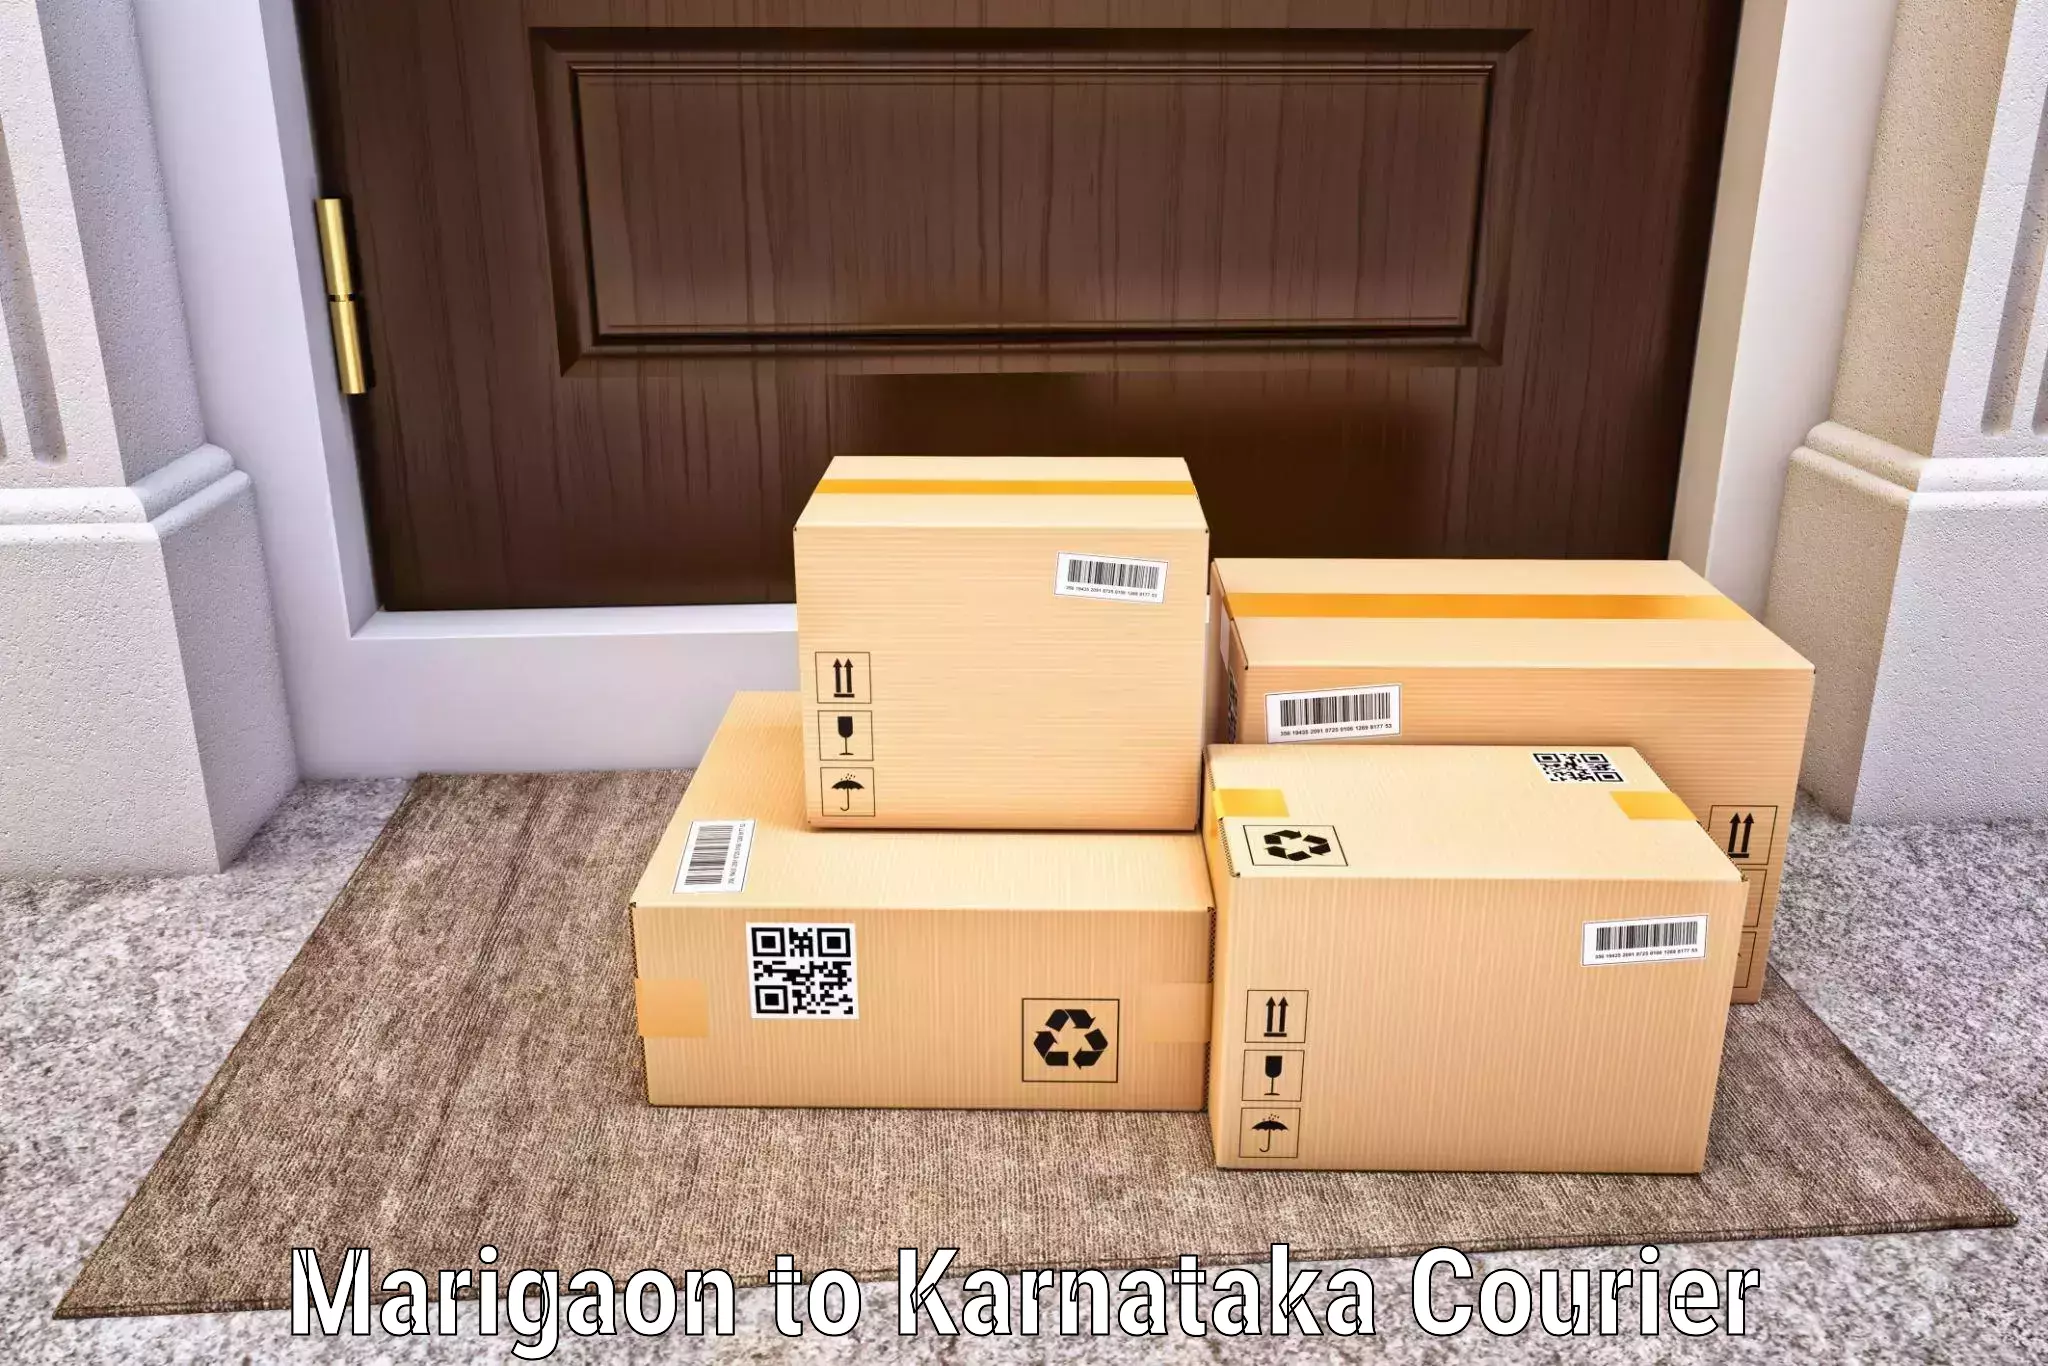 Premium courier solutions Marigaon to Aurad